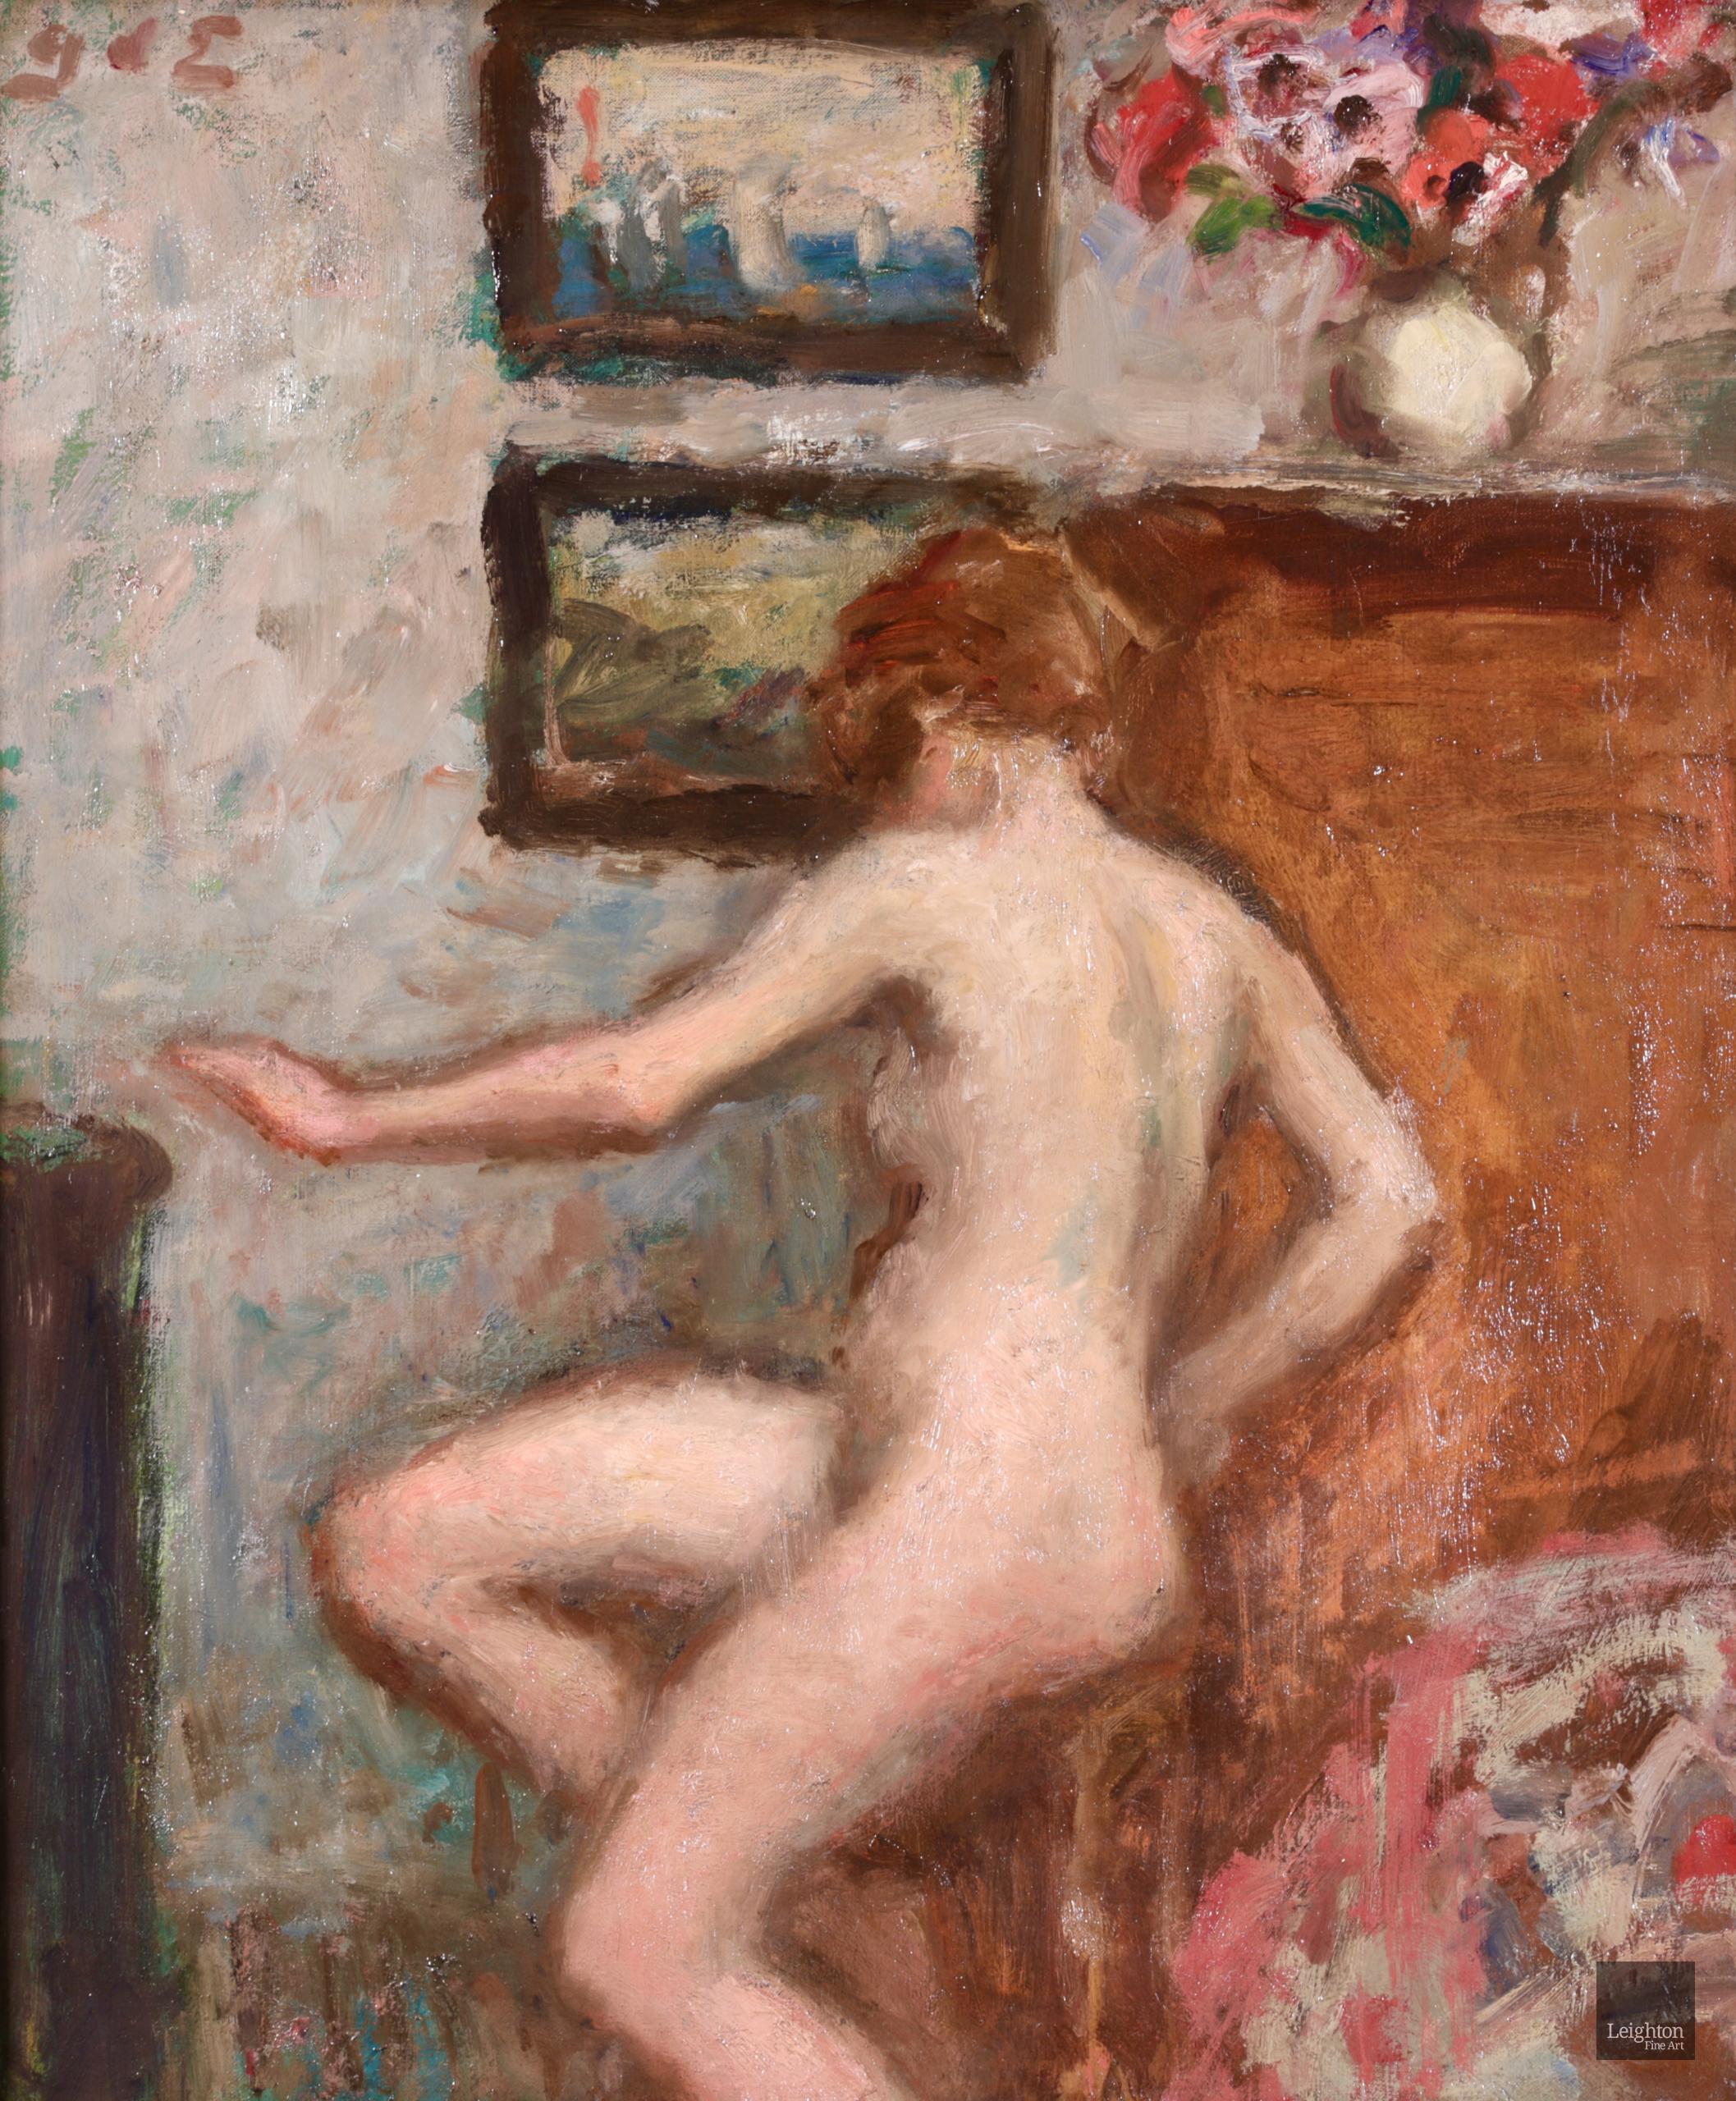 Huile de nu signée sur toile originale circa 1910 par le peintre post impressionniste français Georges D'espagnat. L'œuvre représente une femme nue assise sur un étal tourné vers l'artiste. Des tableaux sont accrochés au mur et un vase rempli de